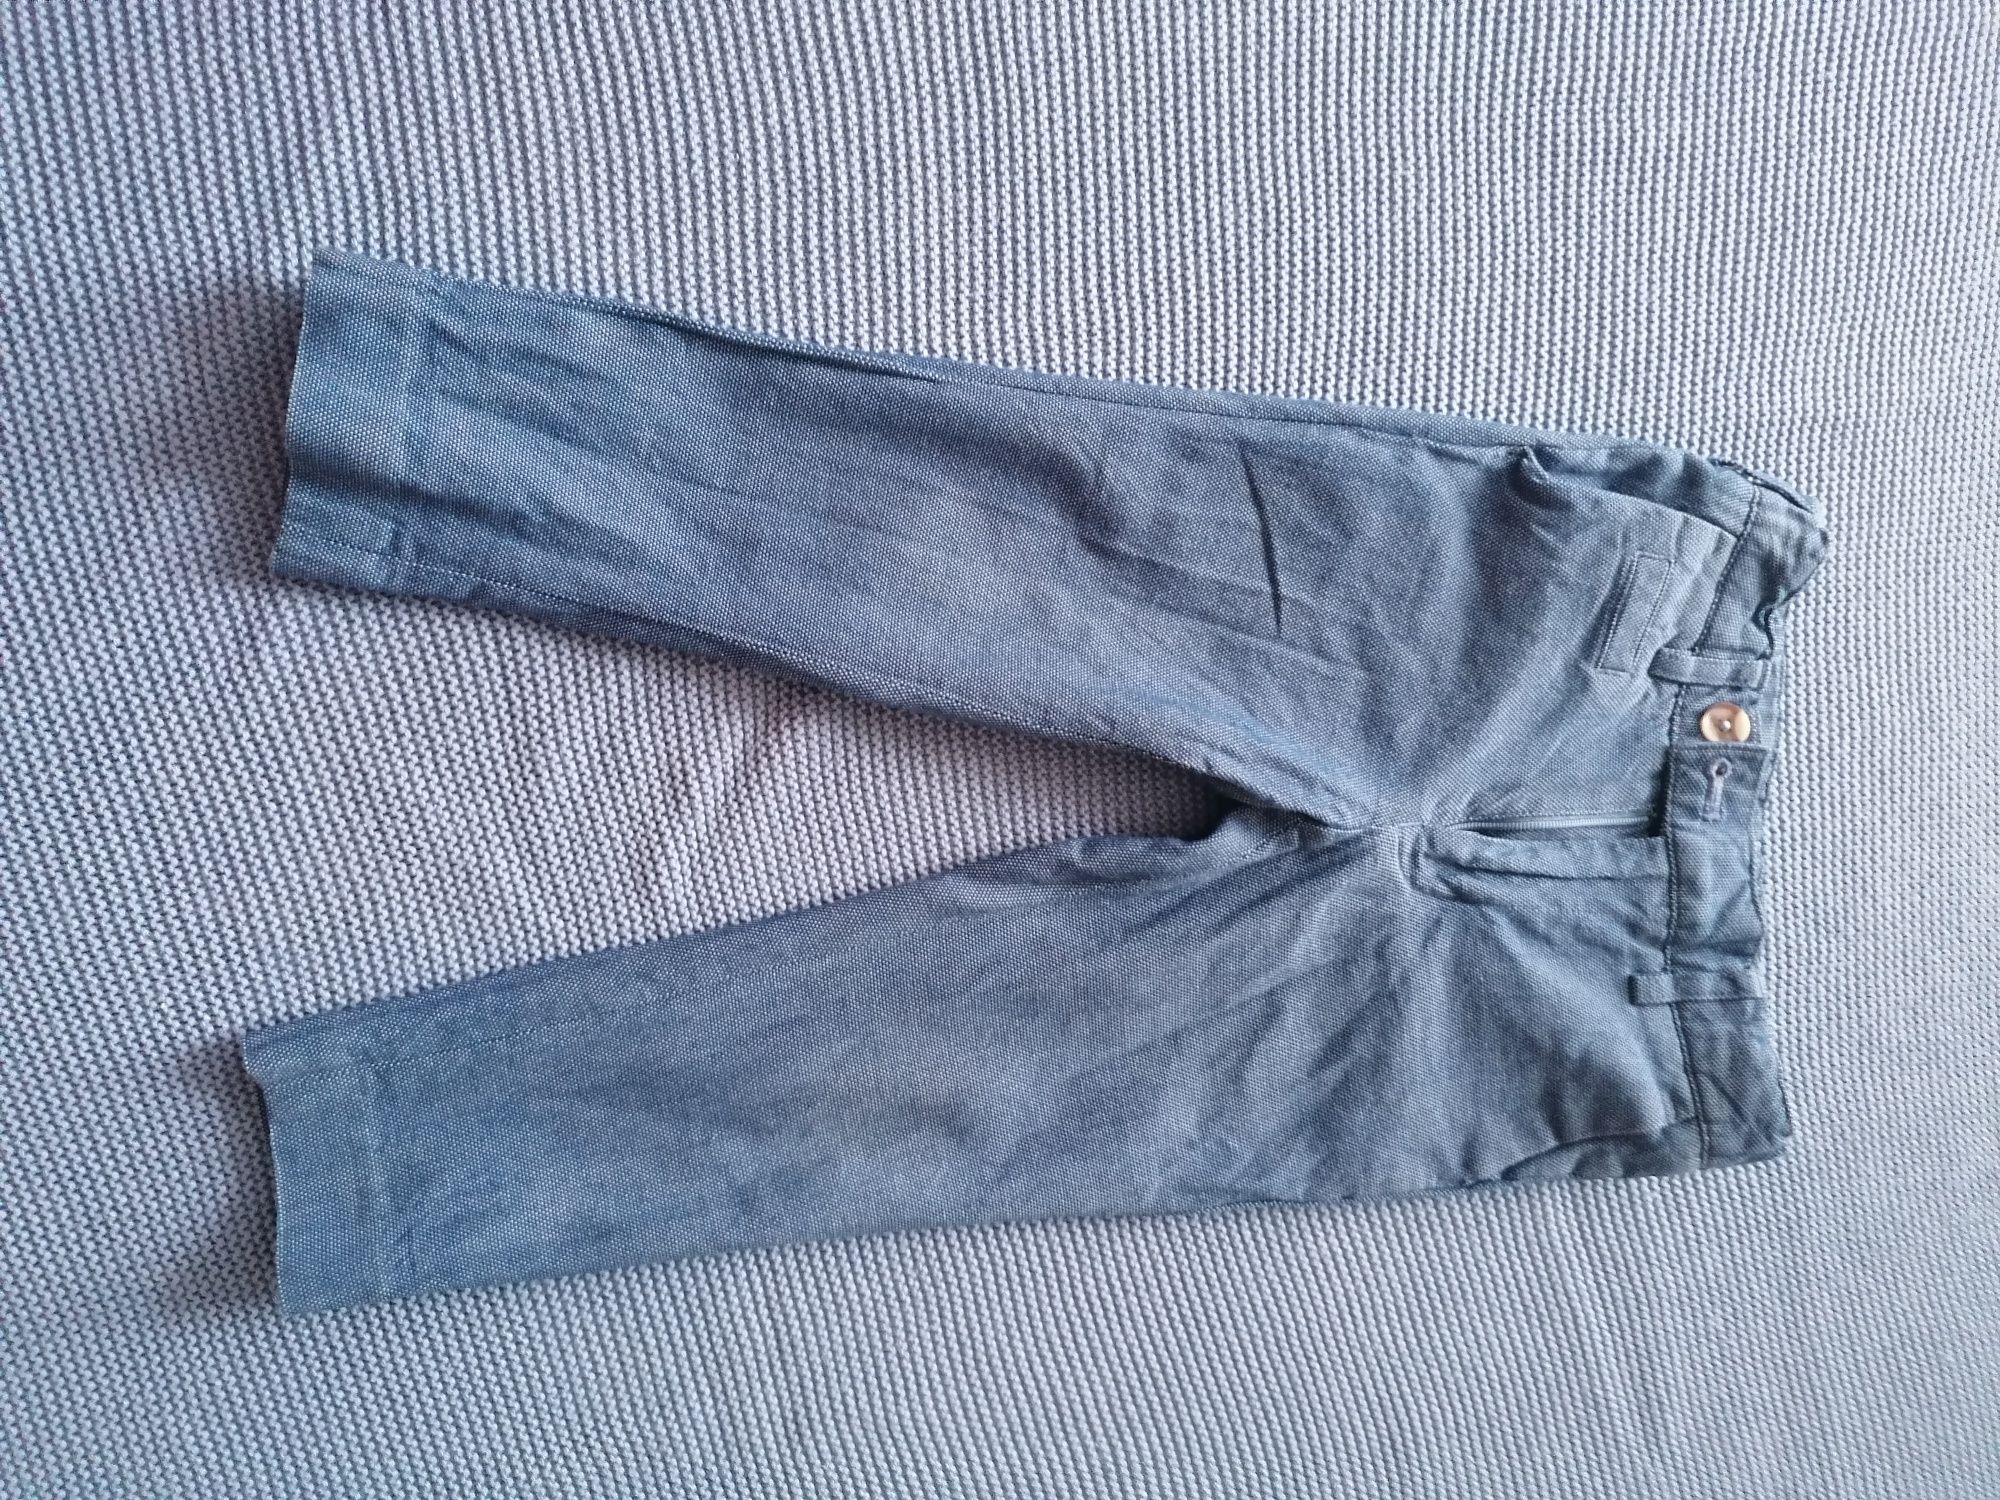 Spodnie eleganckie dla chłopca 98